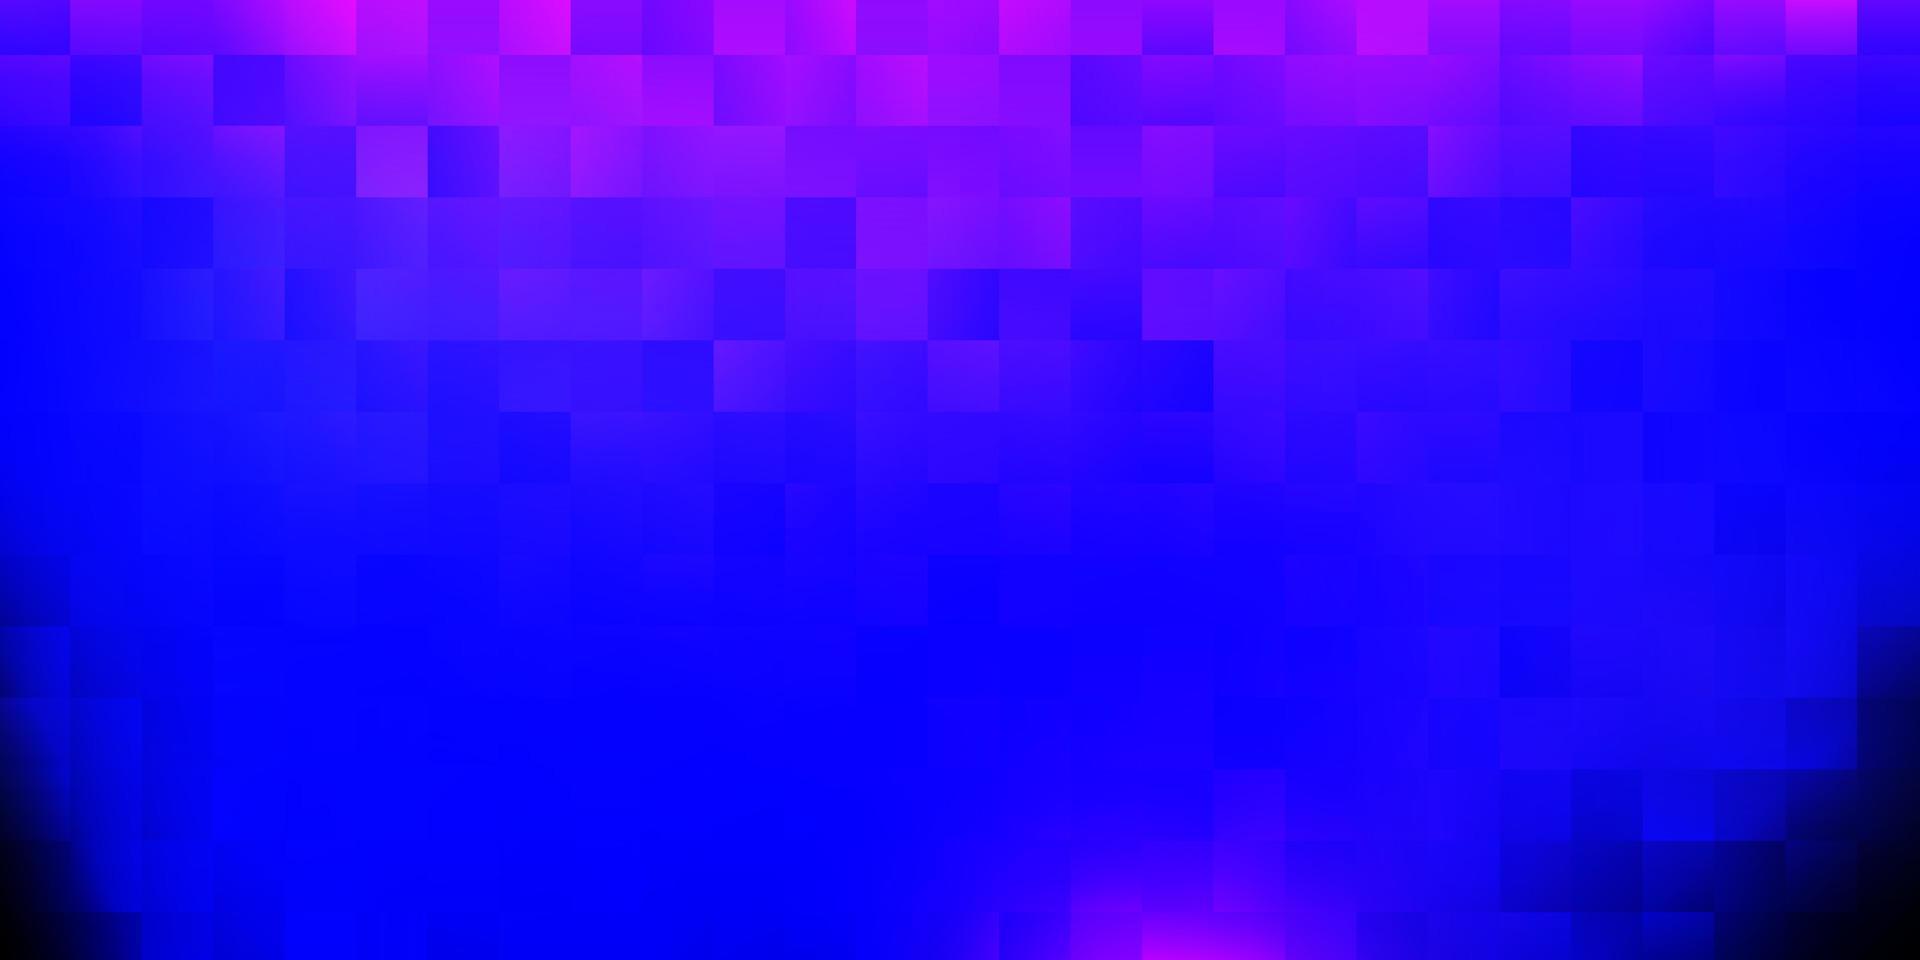 Dark purple vector backdrop in rectangular style.